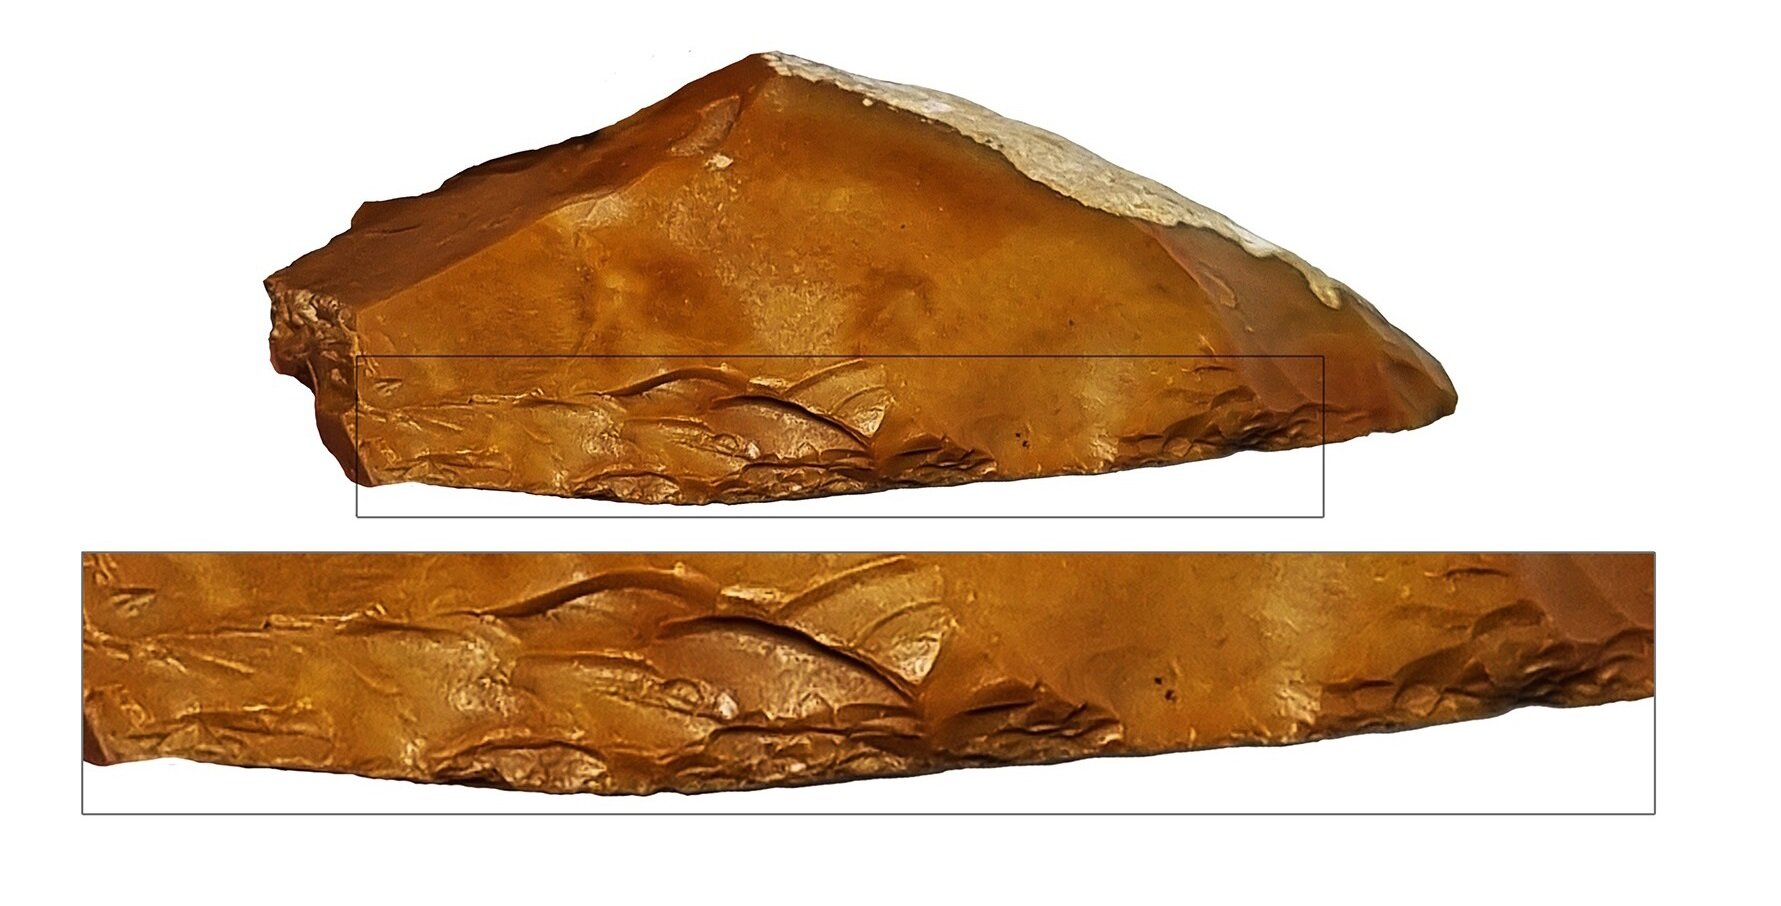 Otkriveno kameno oruđe staro 400 000 godina u Izraelu